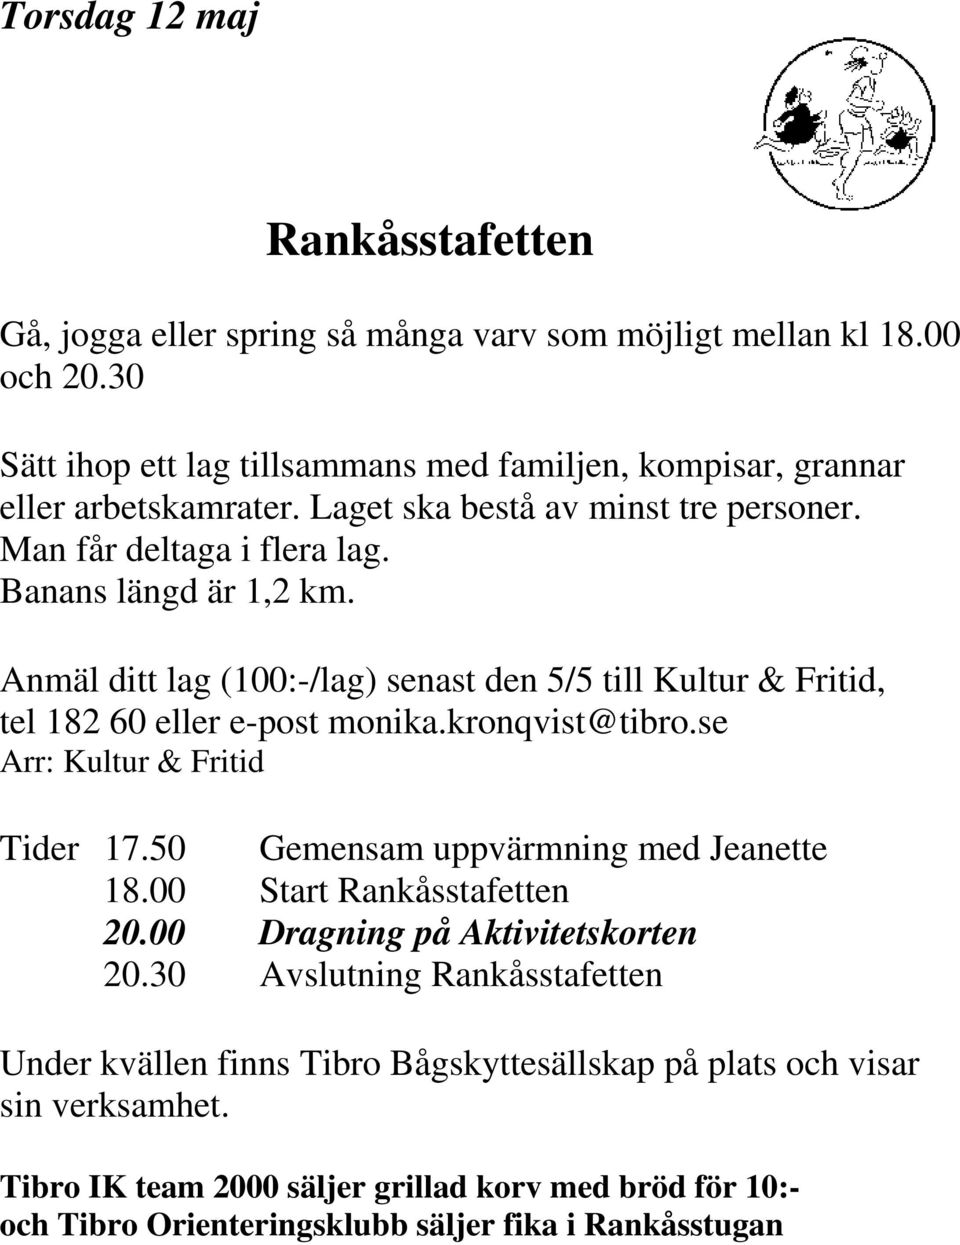 Anmäl ditt lag (100:-/lag) senast den 5/5 till Kultur & Fritid, tel 182 60 eller e-post monika.kronqvist@tibro.se Arr: Kultur & Fritid Tider 17.50 Gemensam uppvärmning med Jeanette 18.